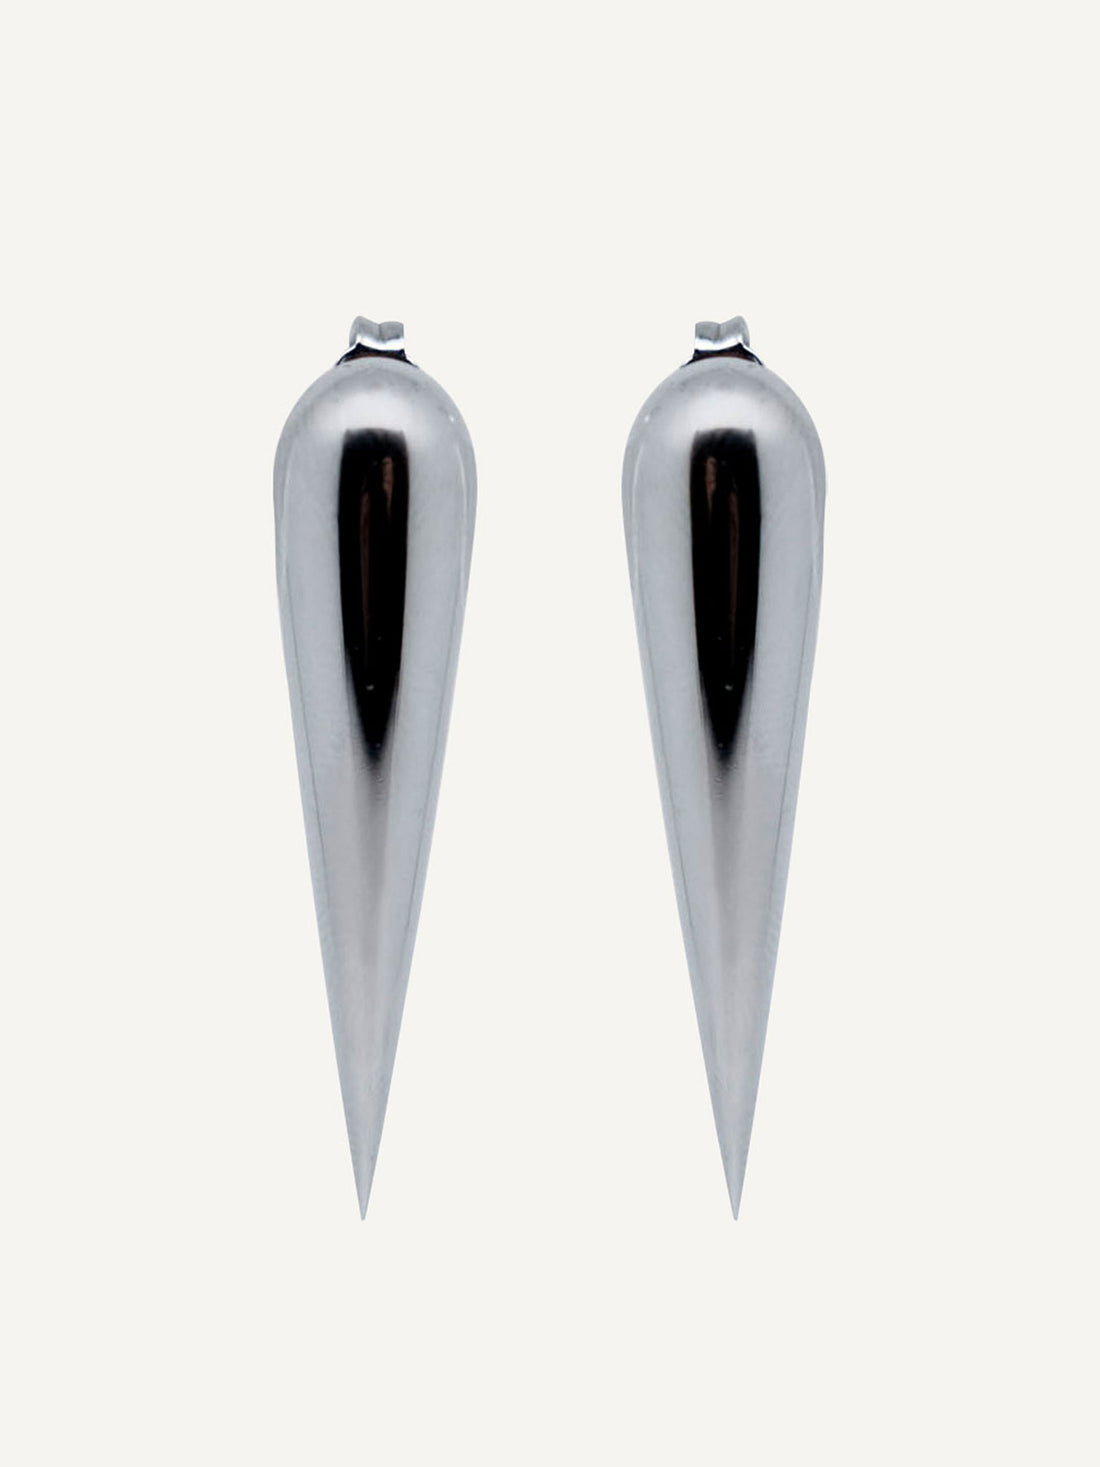 Earrings by Monad Design